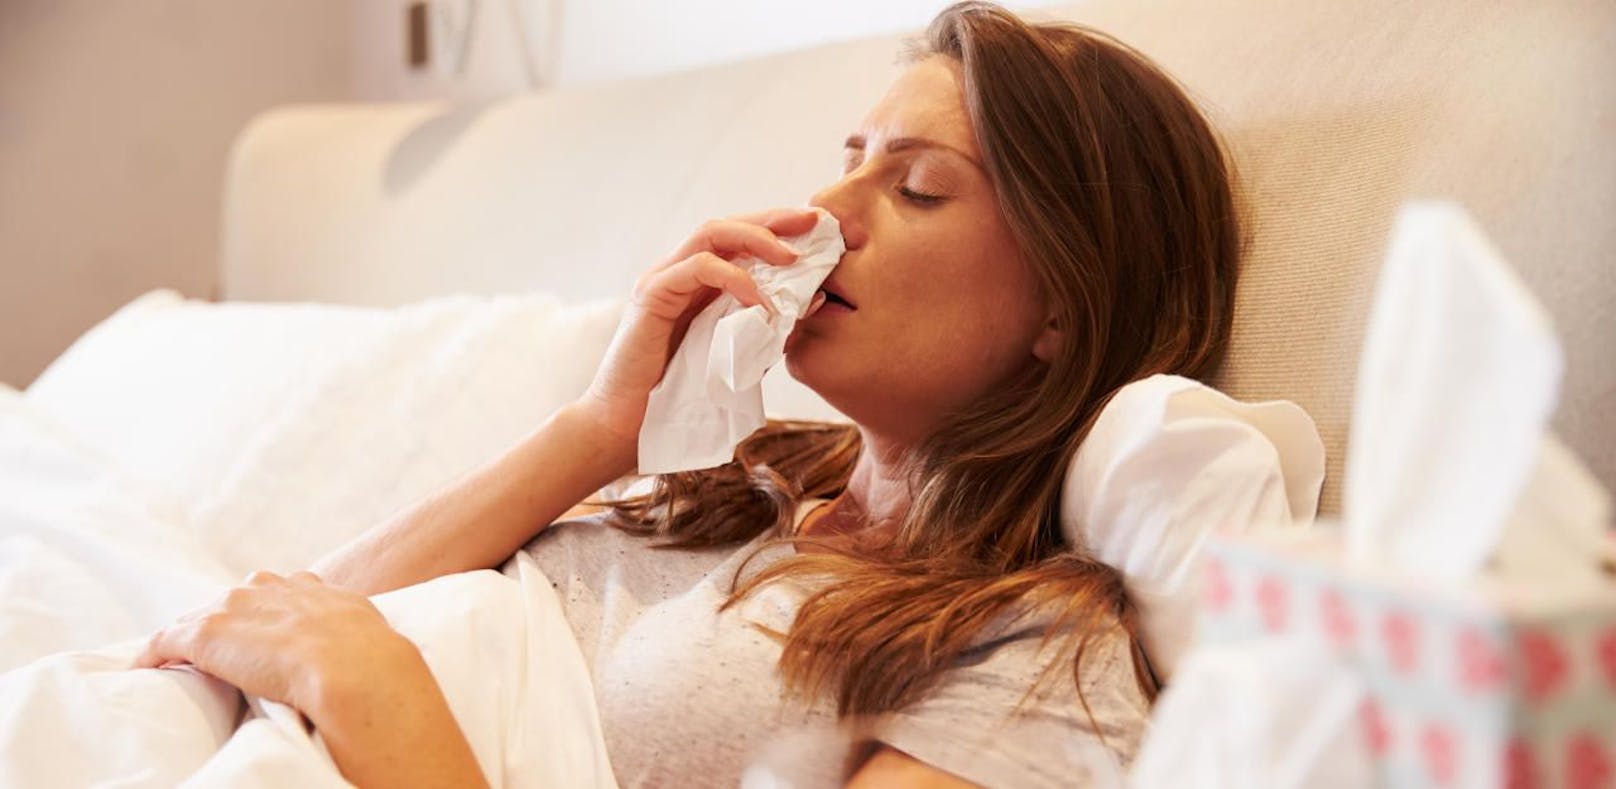 In der Kalenderwoche 1 waren bei der NÖGKK insgesamt 2.769 Personen wegen der Grippe oder grippaler Effekte als arbeitsunfähig gemeldet.